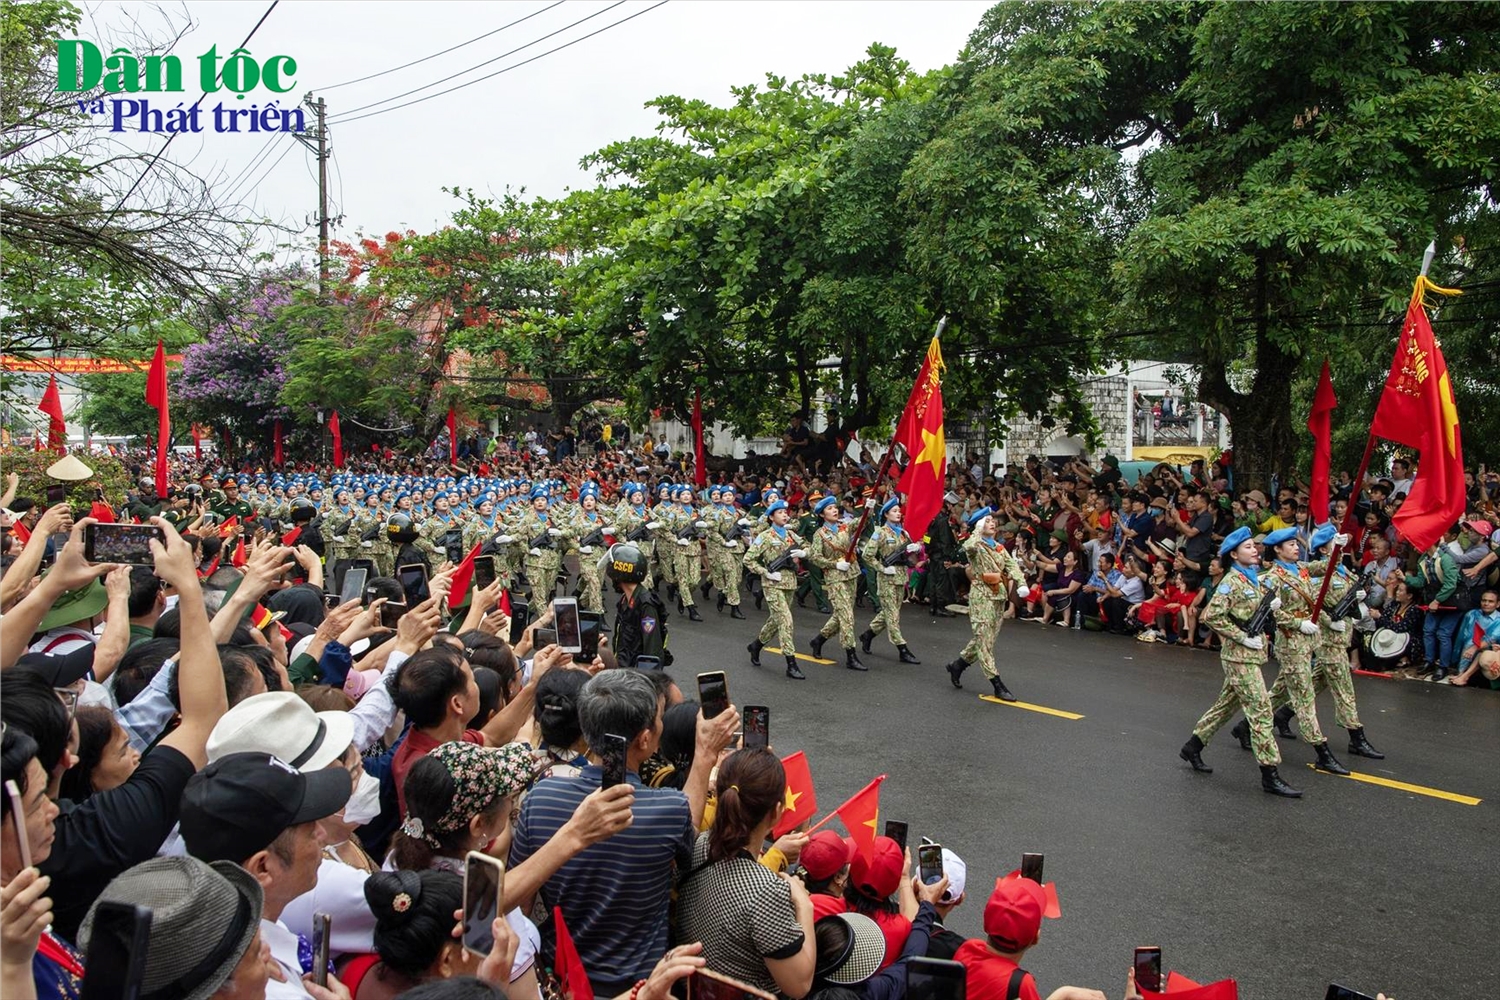 Sau khi diễu binh, diễu hành qua lễ đài, các khối tiếp tục di chuyển qua tuyến đường Hoàng Văn Thái đến ngã tư A1, chia thành 3 hướng trong sự chào đón nồng nhiệt của người dân hai bên đường